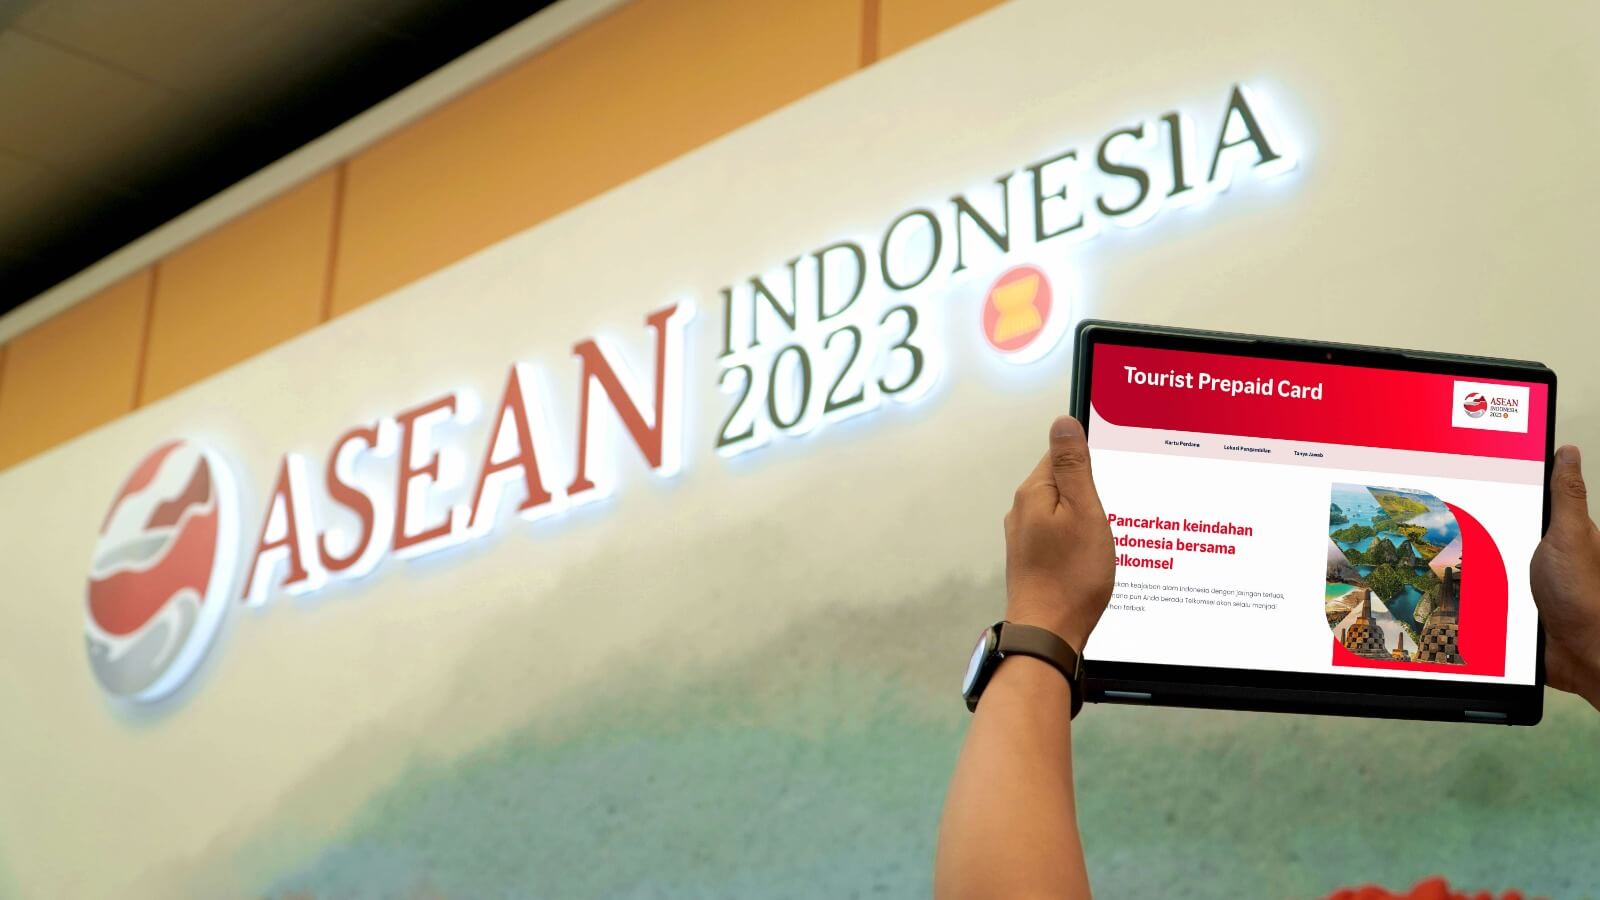 Dukung KTT ke-43 ASEAN, Telkomsel Pastikan Kemudahan Akses Jaringan dan Layanan Broadband 